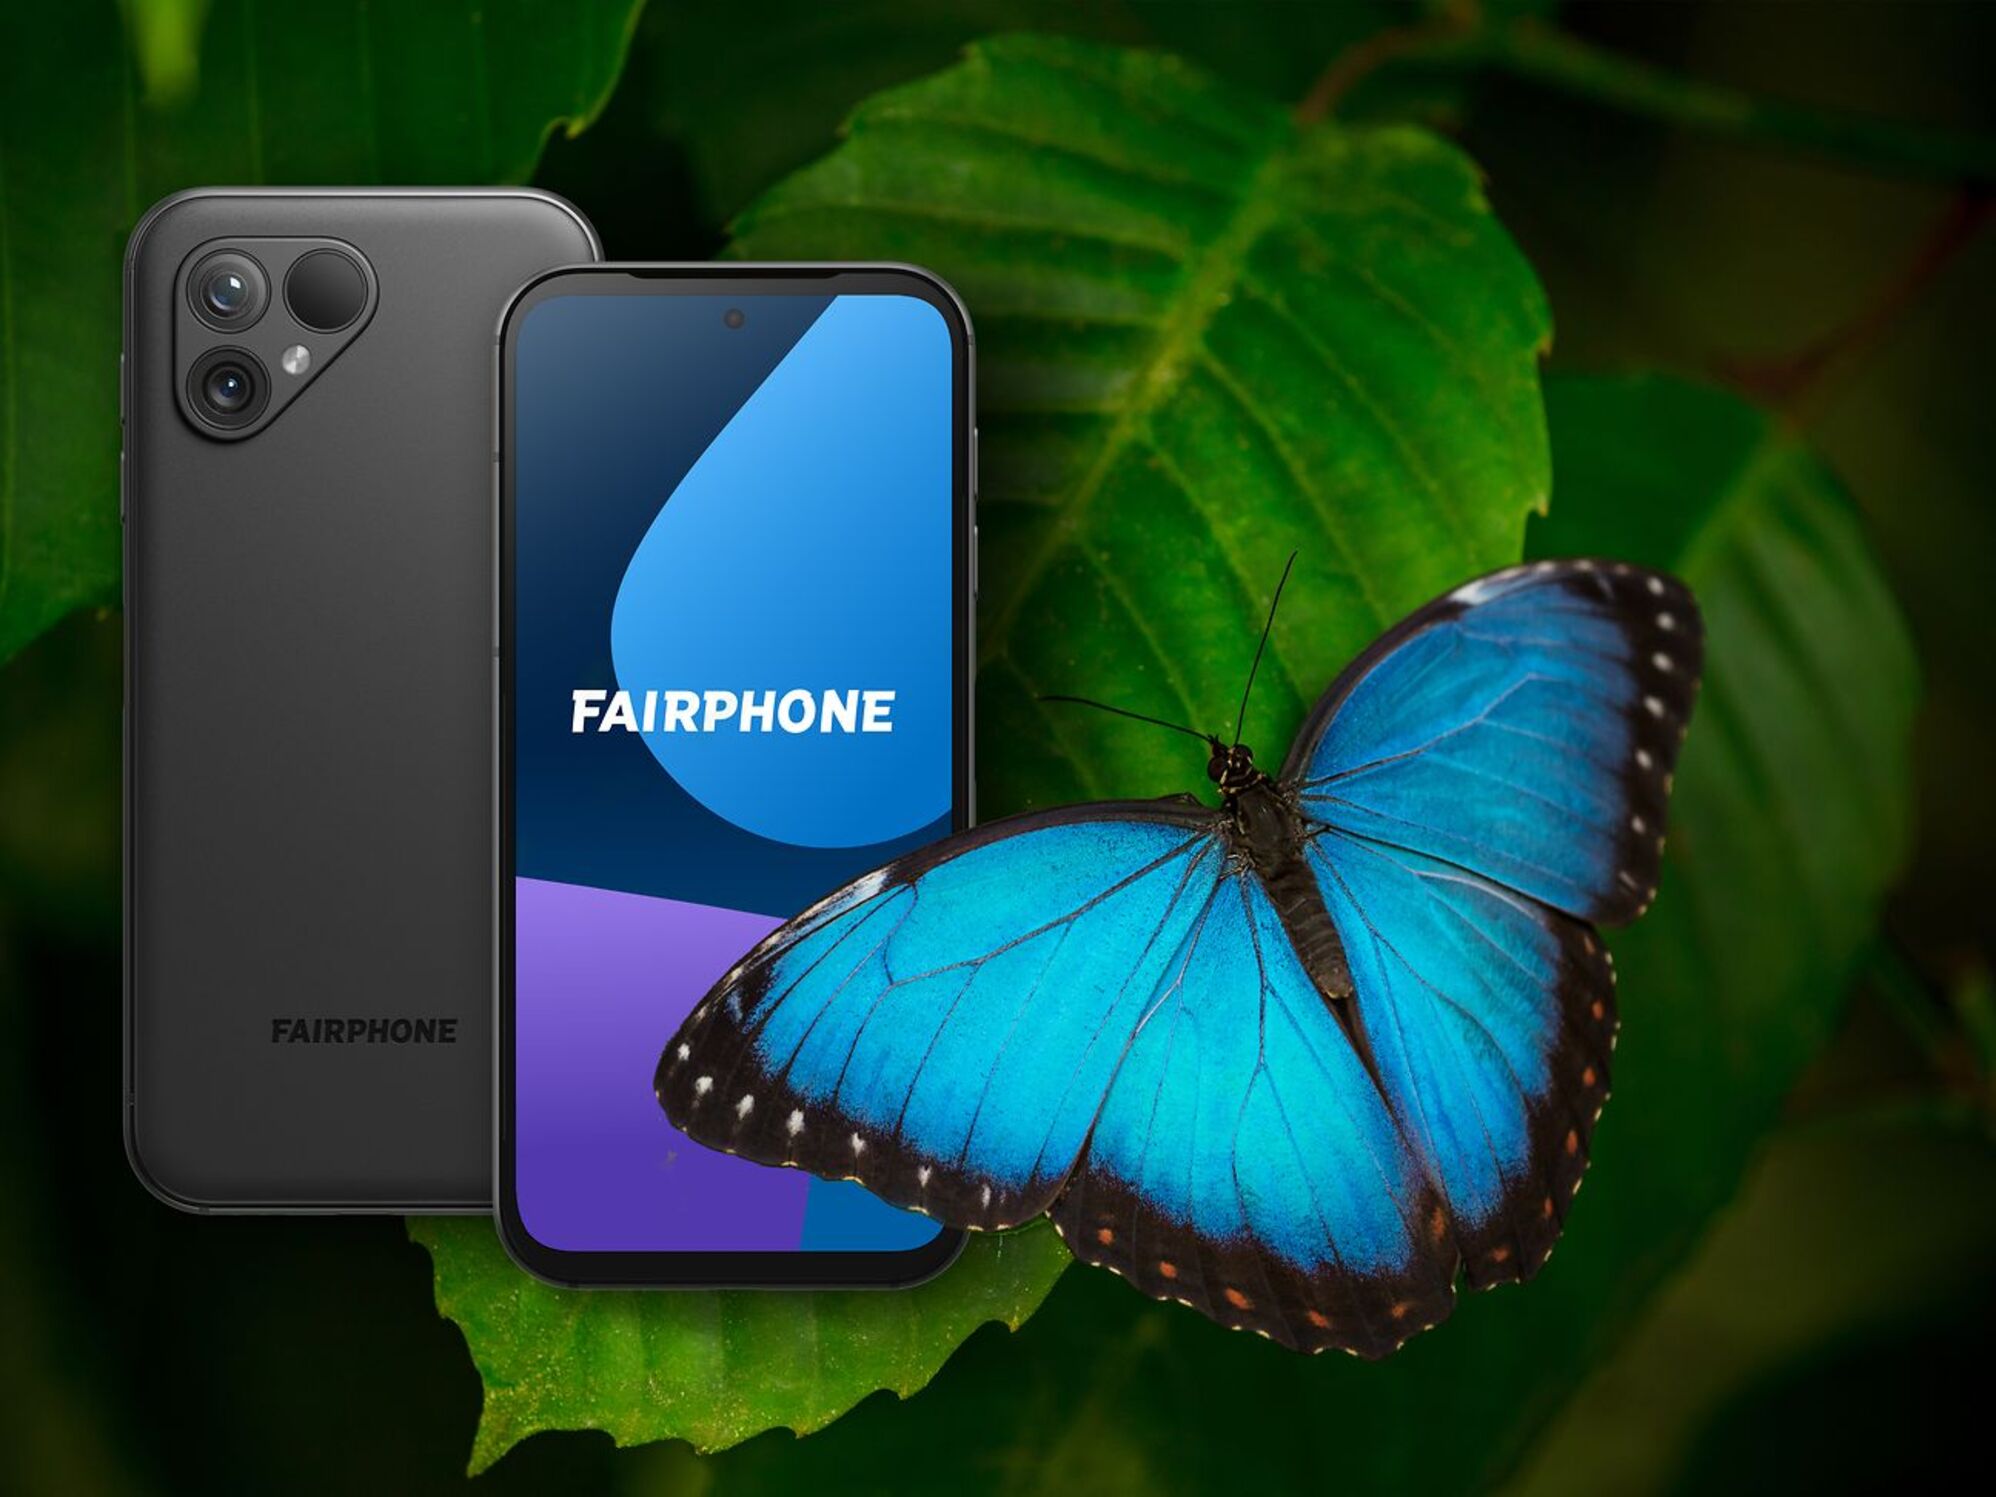 Fairphone припиняє програму оренди смартфонів через низький попит